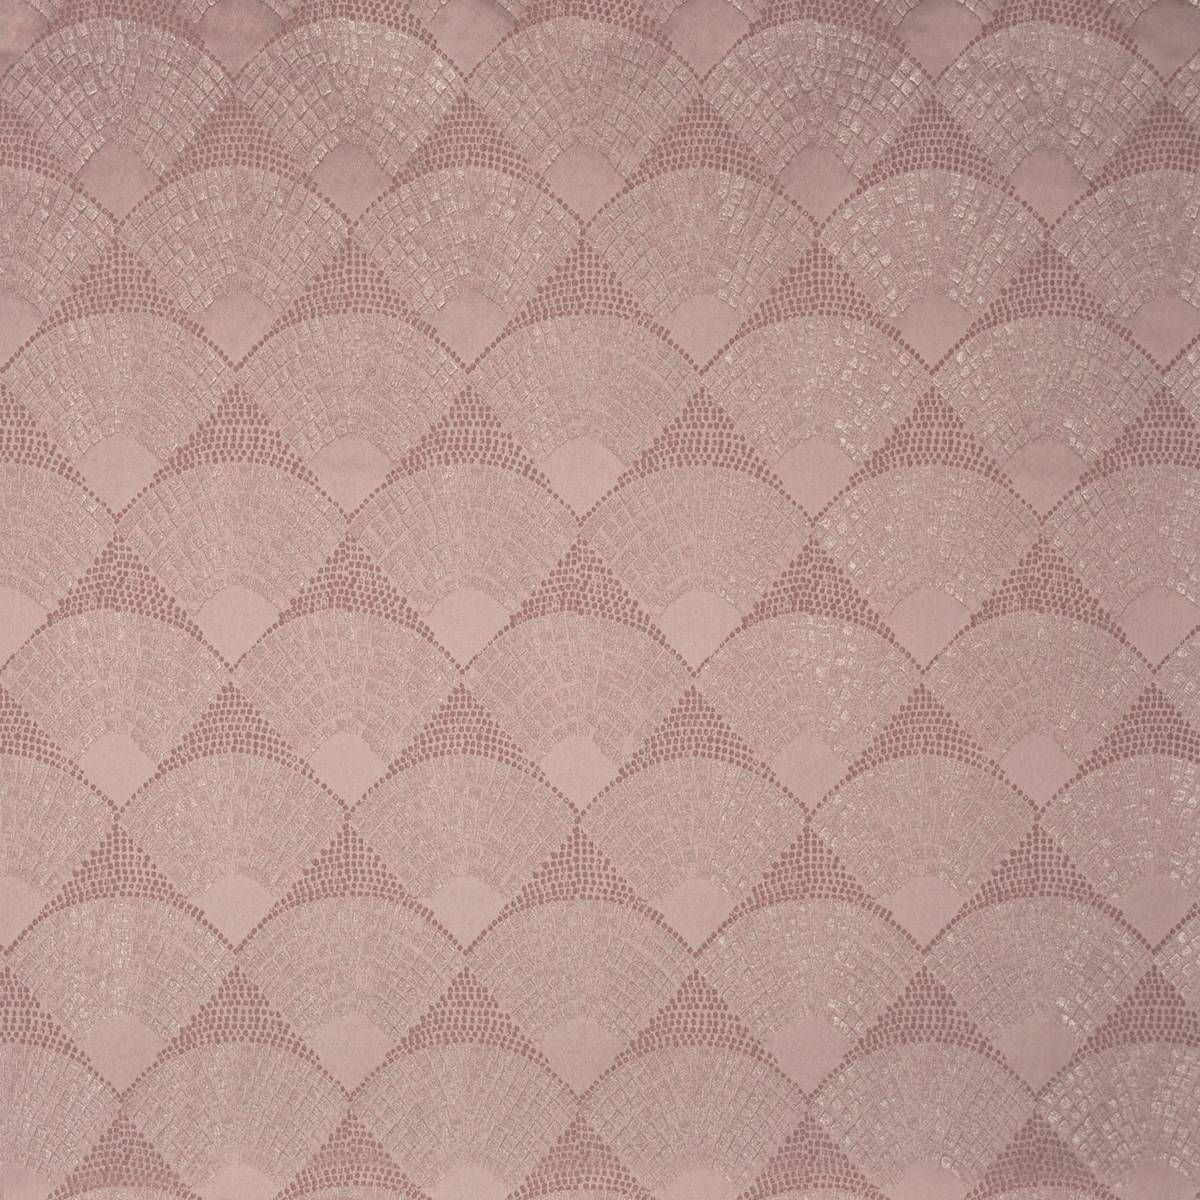 Radiate Rose Quartz Fabric by Prestigious Textiles